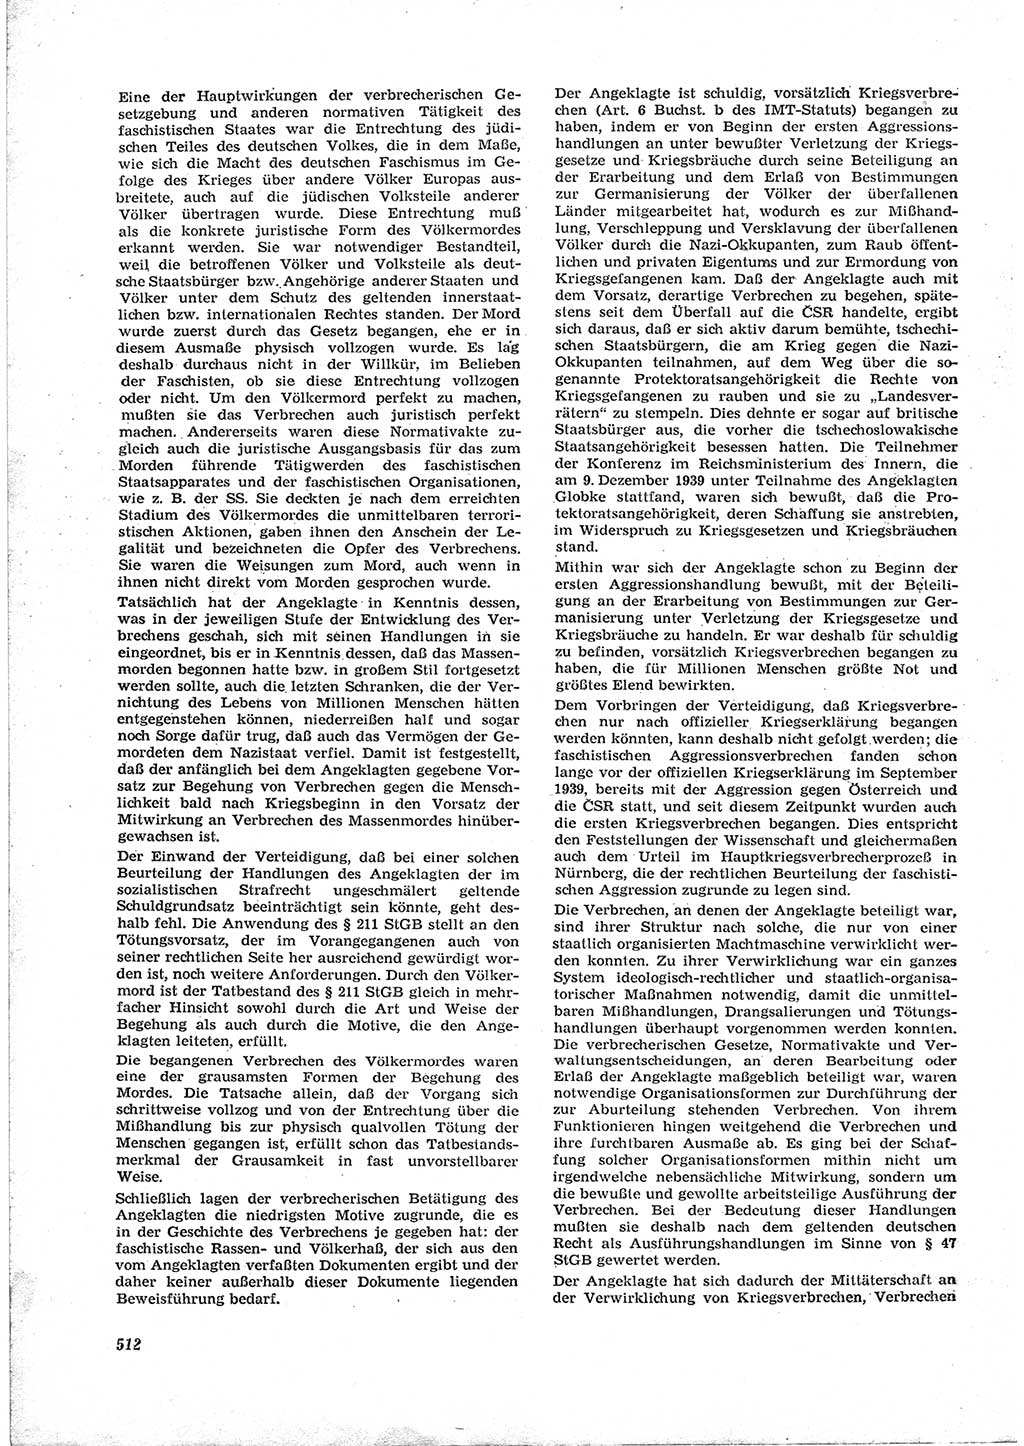 Neue Justiz (NJ), Zeitschrift für Recht und Rechtswissenschaft [Deutsche Demokratische Republik (DDR)], 17. Jahrgang 1963, Seite 512 (NJ DDR 1963, S. 512)